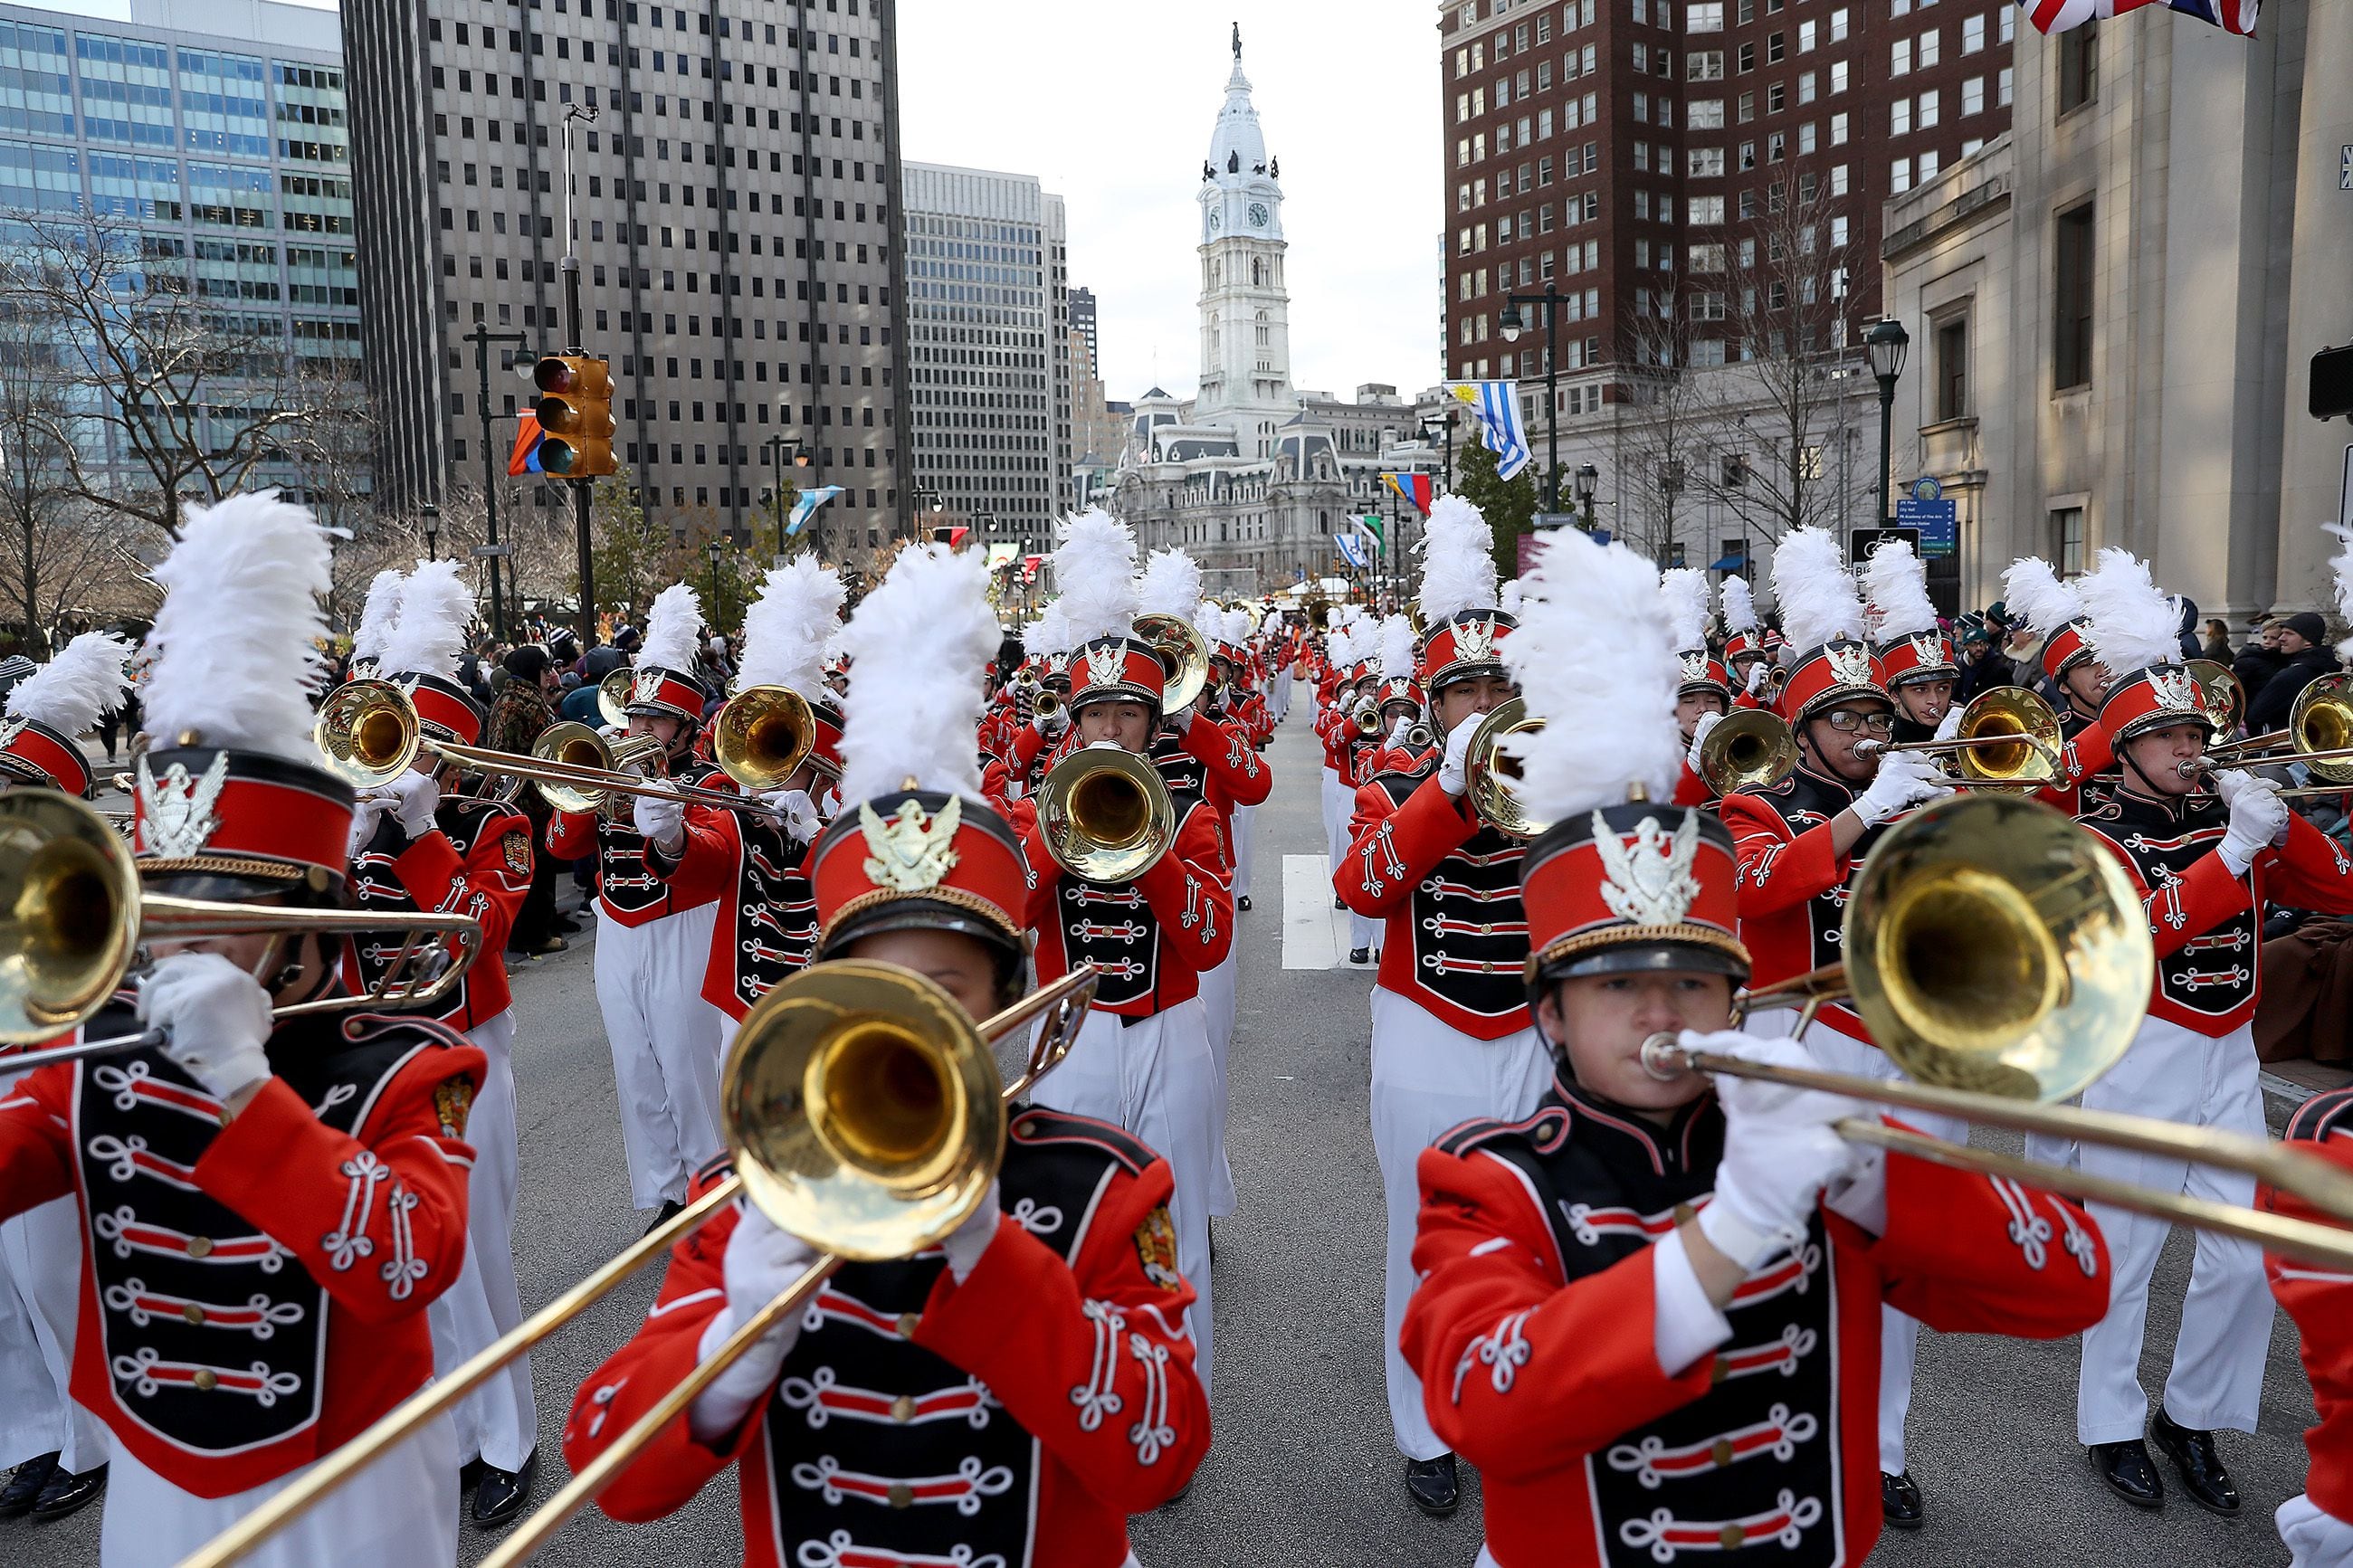 Philadelphia Thanksgiving Day Parade returns in 2021